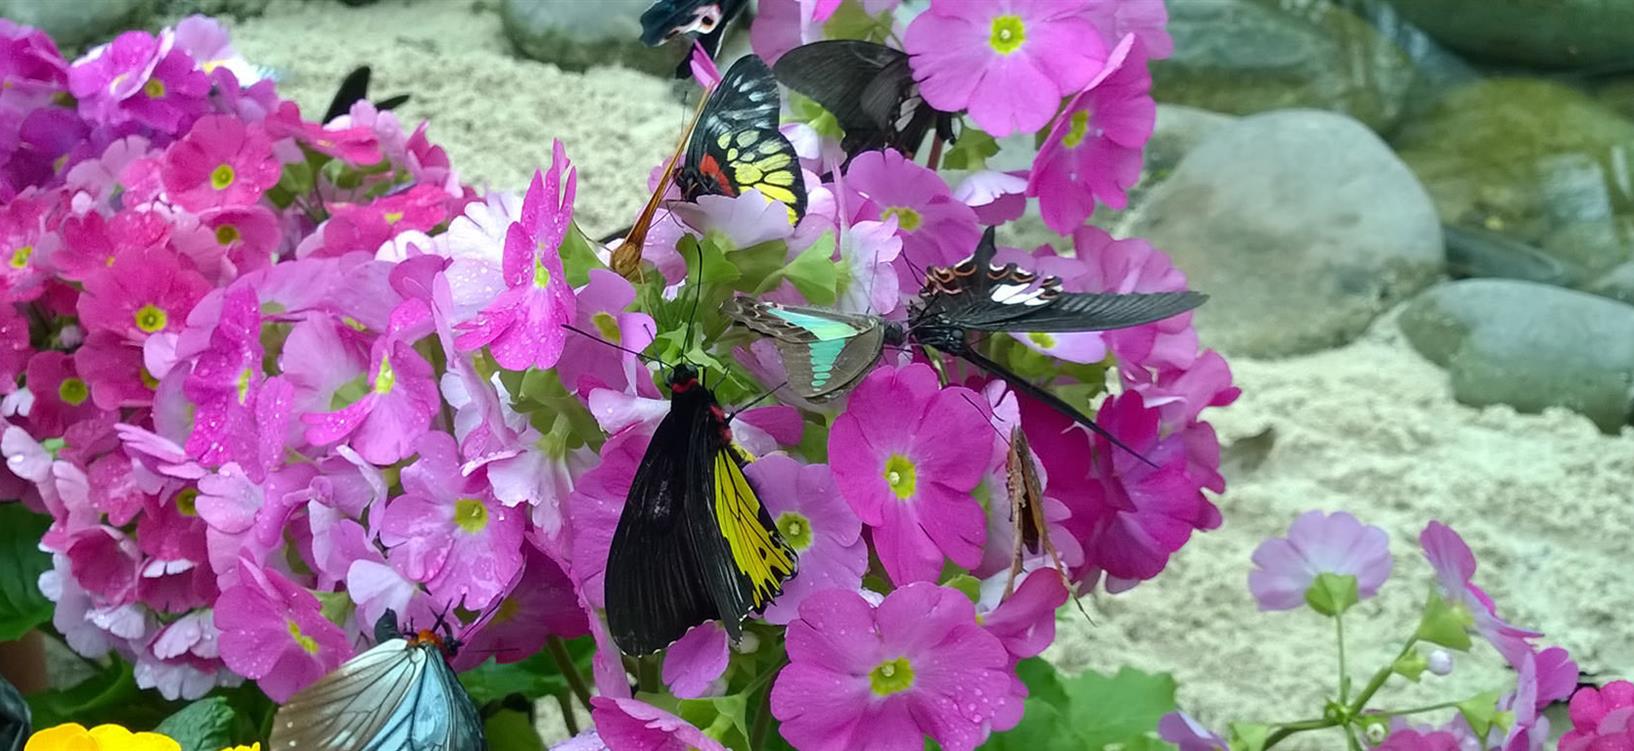 各色美丽的蝴蝶栖息在此处，于花海里翩翩起舞，它们是一群自然之灵，为过往的游人带来美丽的祝福。